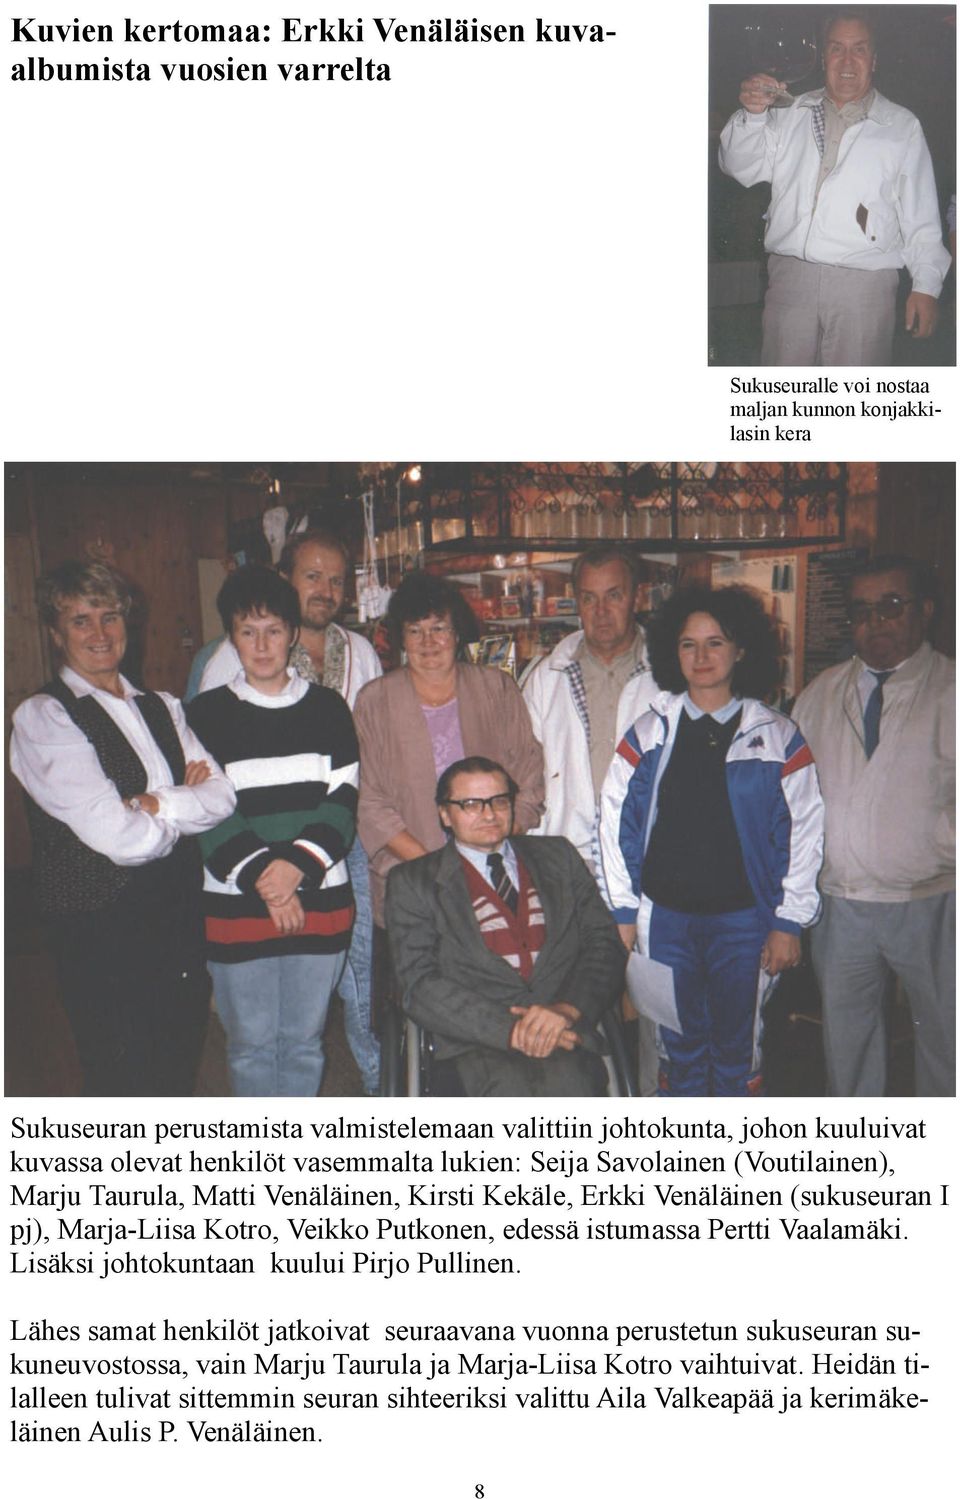 Marja-Liisa Kotro, Veikko Putkonen, edessä istumassa Pertti Vaalamäki. Lisäksi johtokuntaan kuului Pirjo Pullinen.